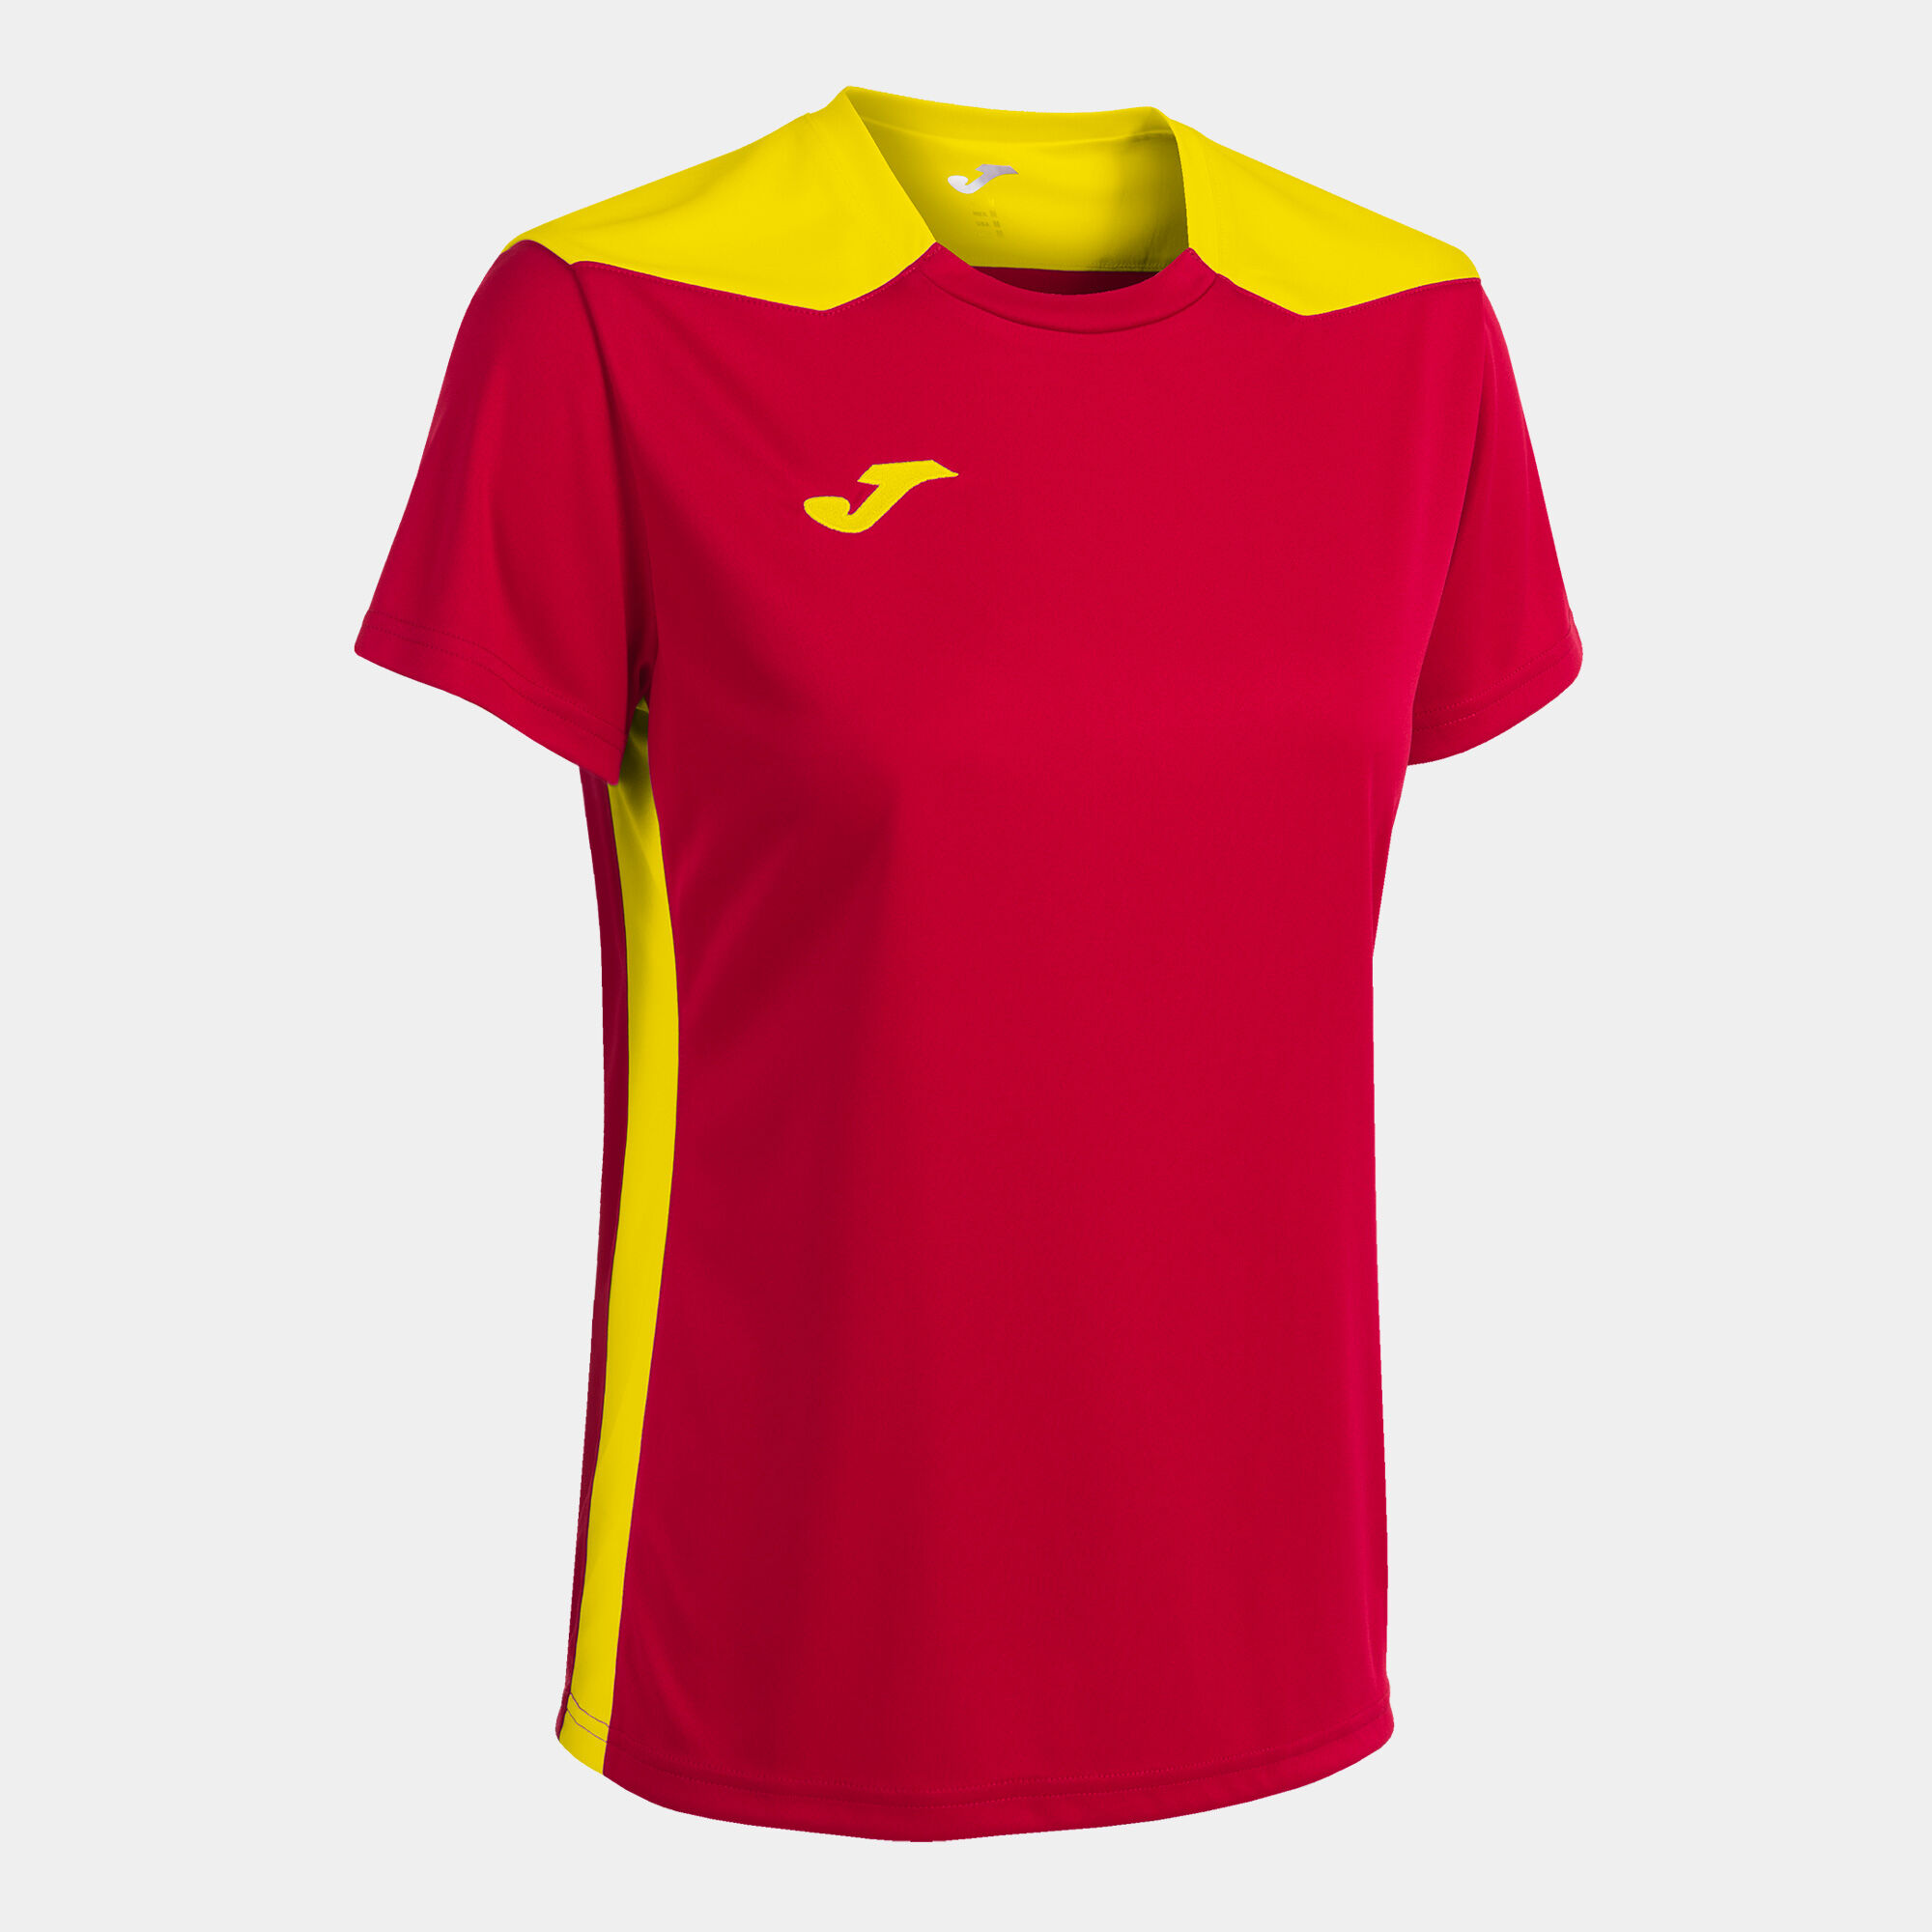 Camiseta manga corta mujer Championship VI rojo amarillo